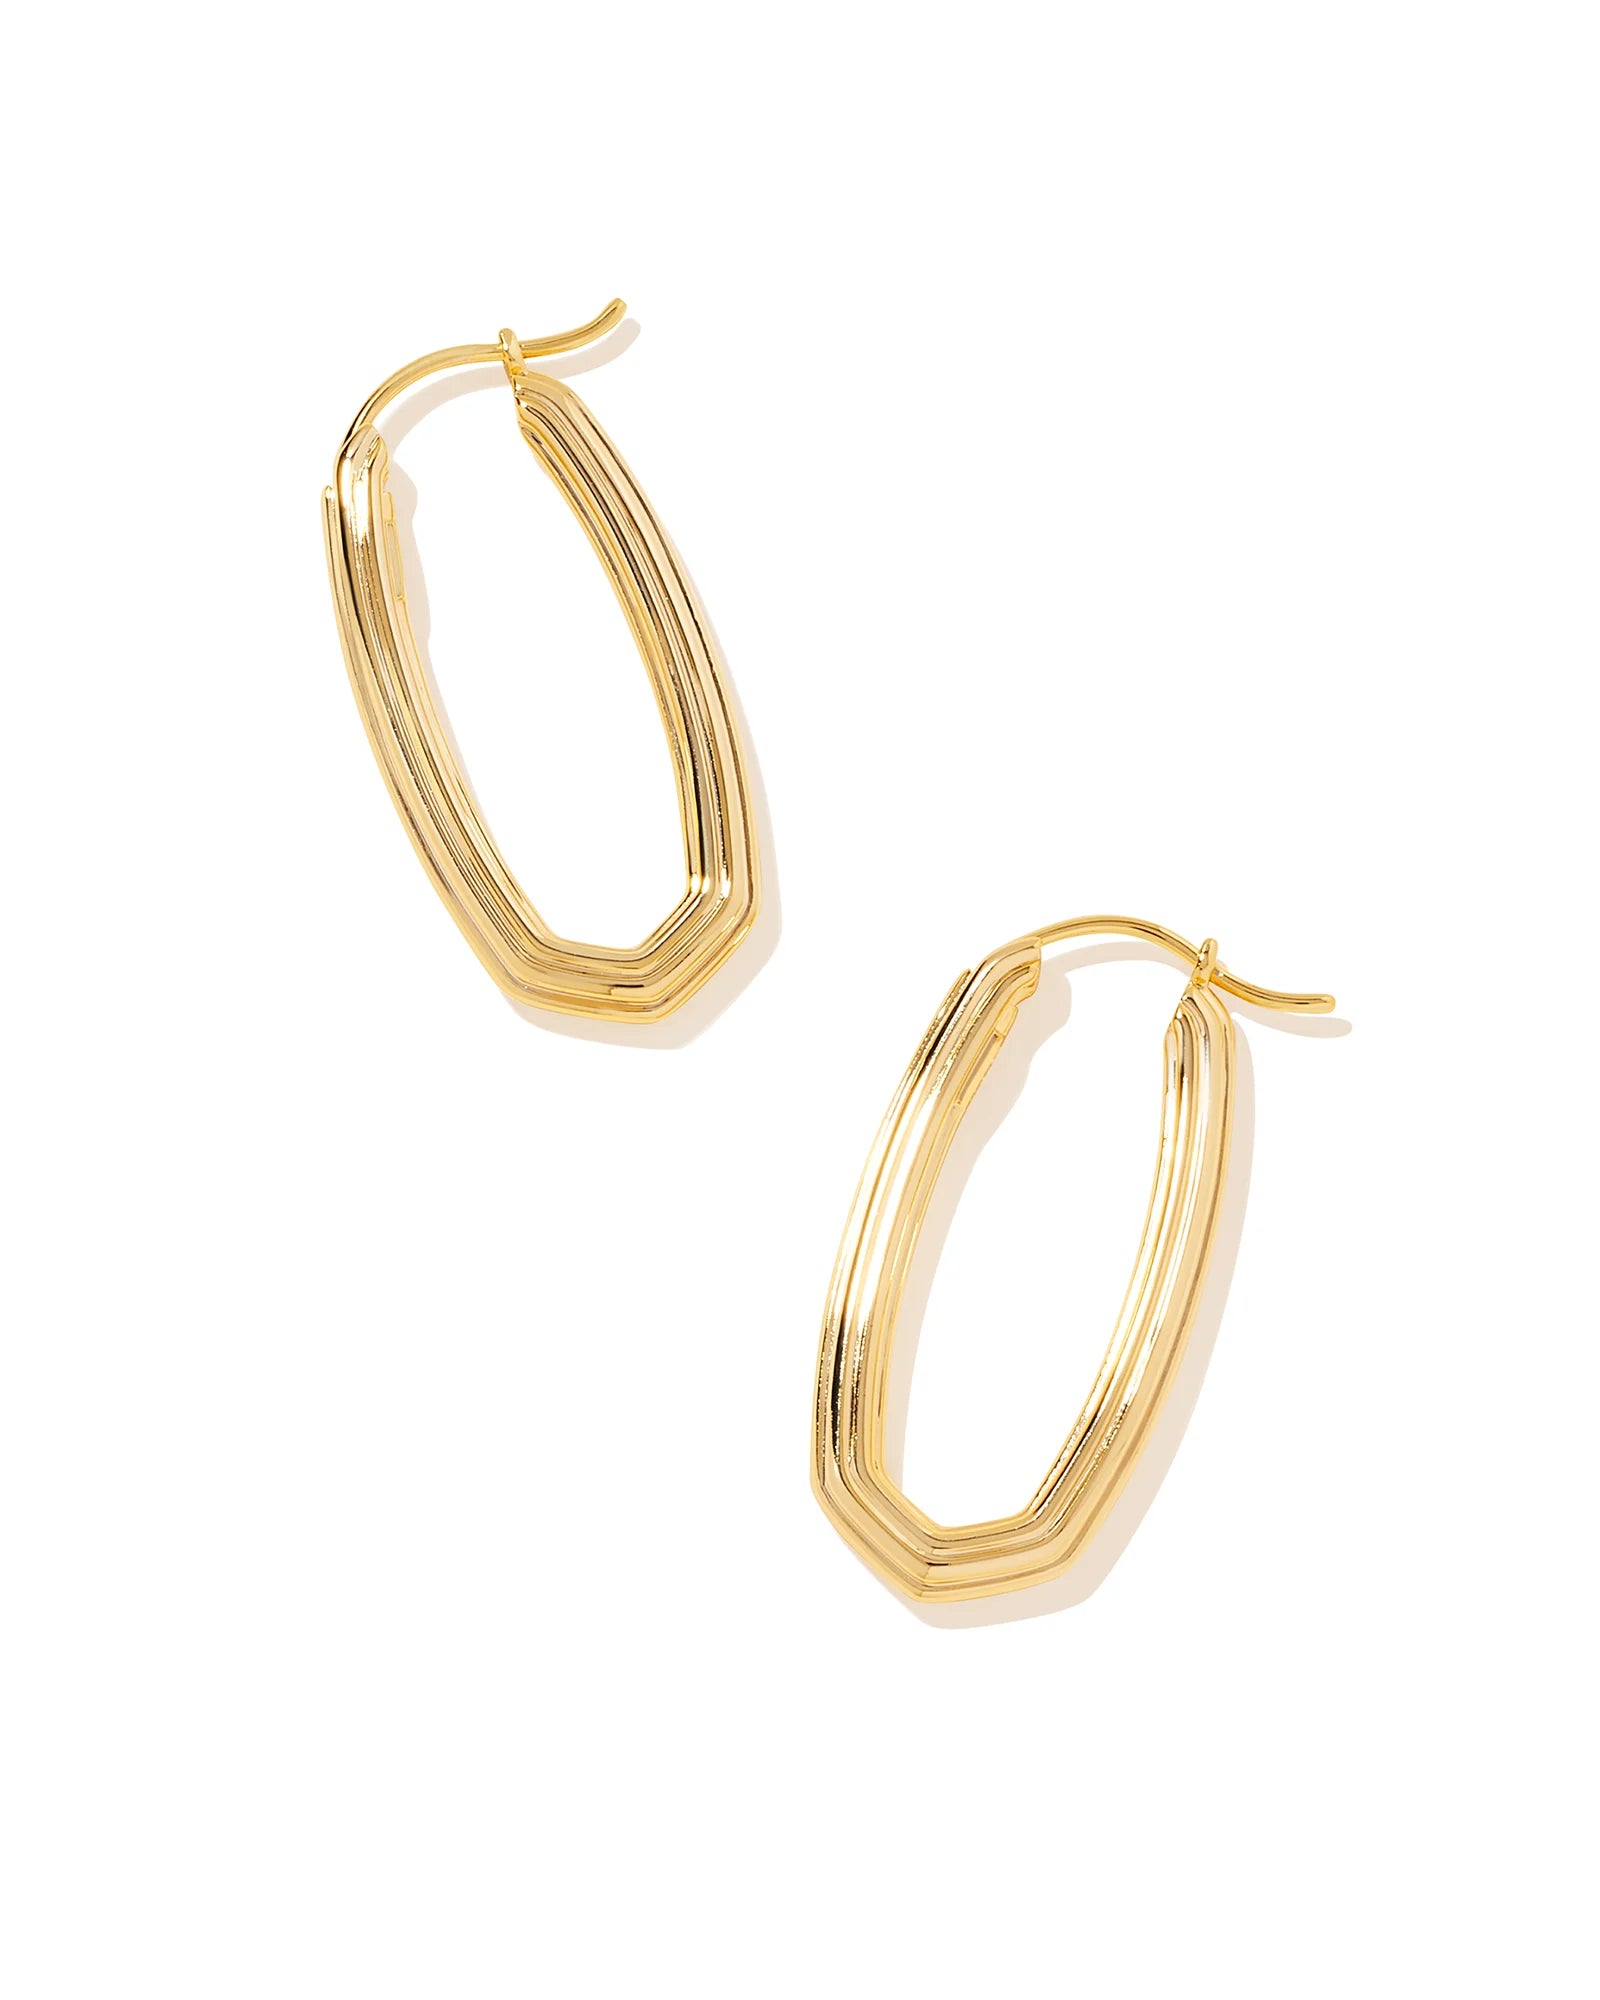 Kendra Scott Heather Hoop Earrings Gold-Earrings-Kendra Scott-E00161GLD-The Twisted Chandelier